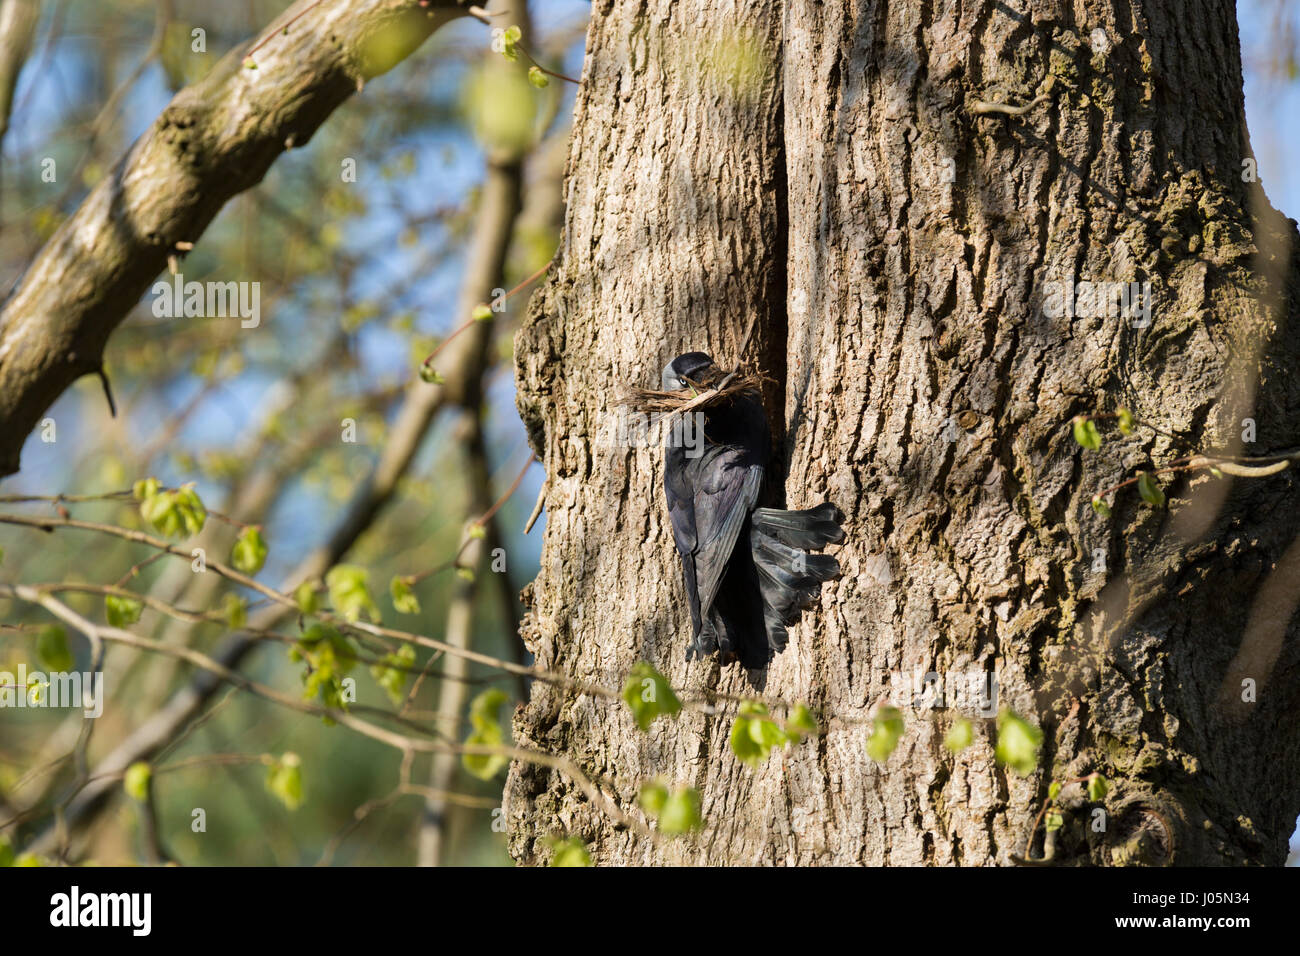 Dohle am Nesteingang auf Baum mit Schnabel Zweige für den Nestbau. Ungespitzten Stockfoto